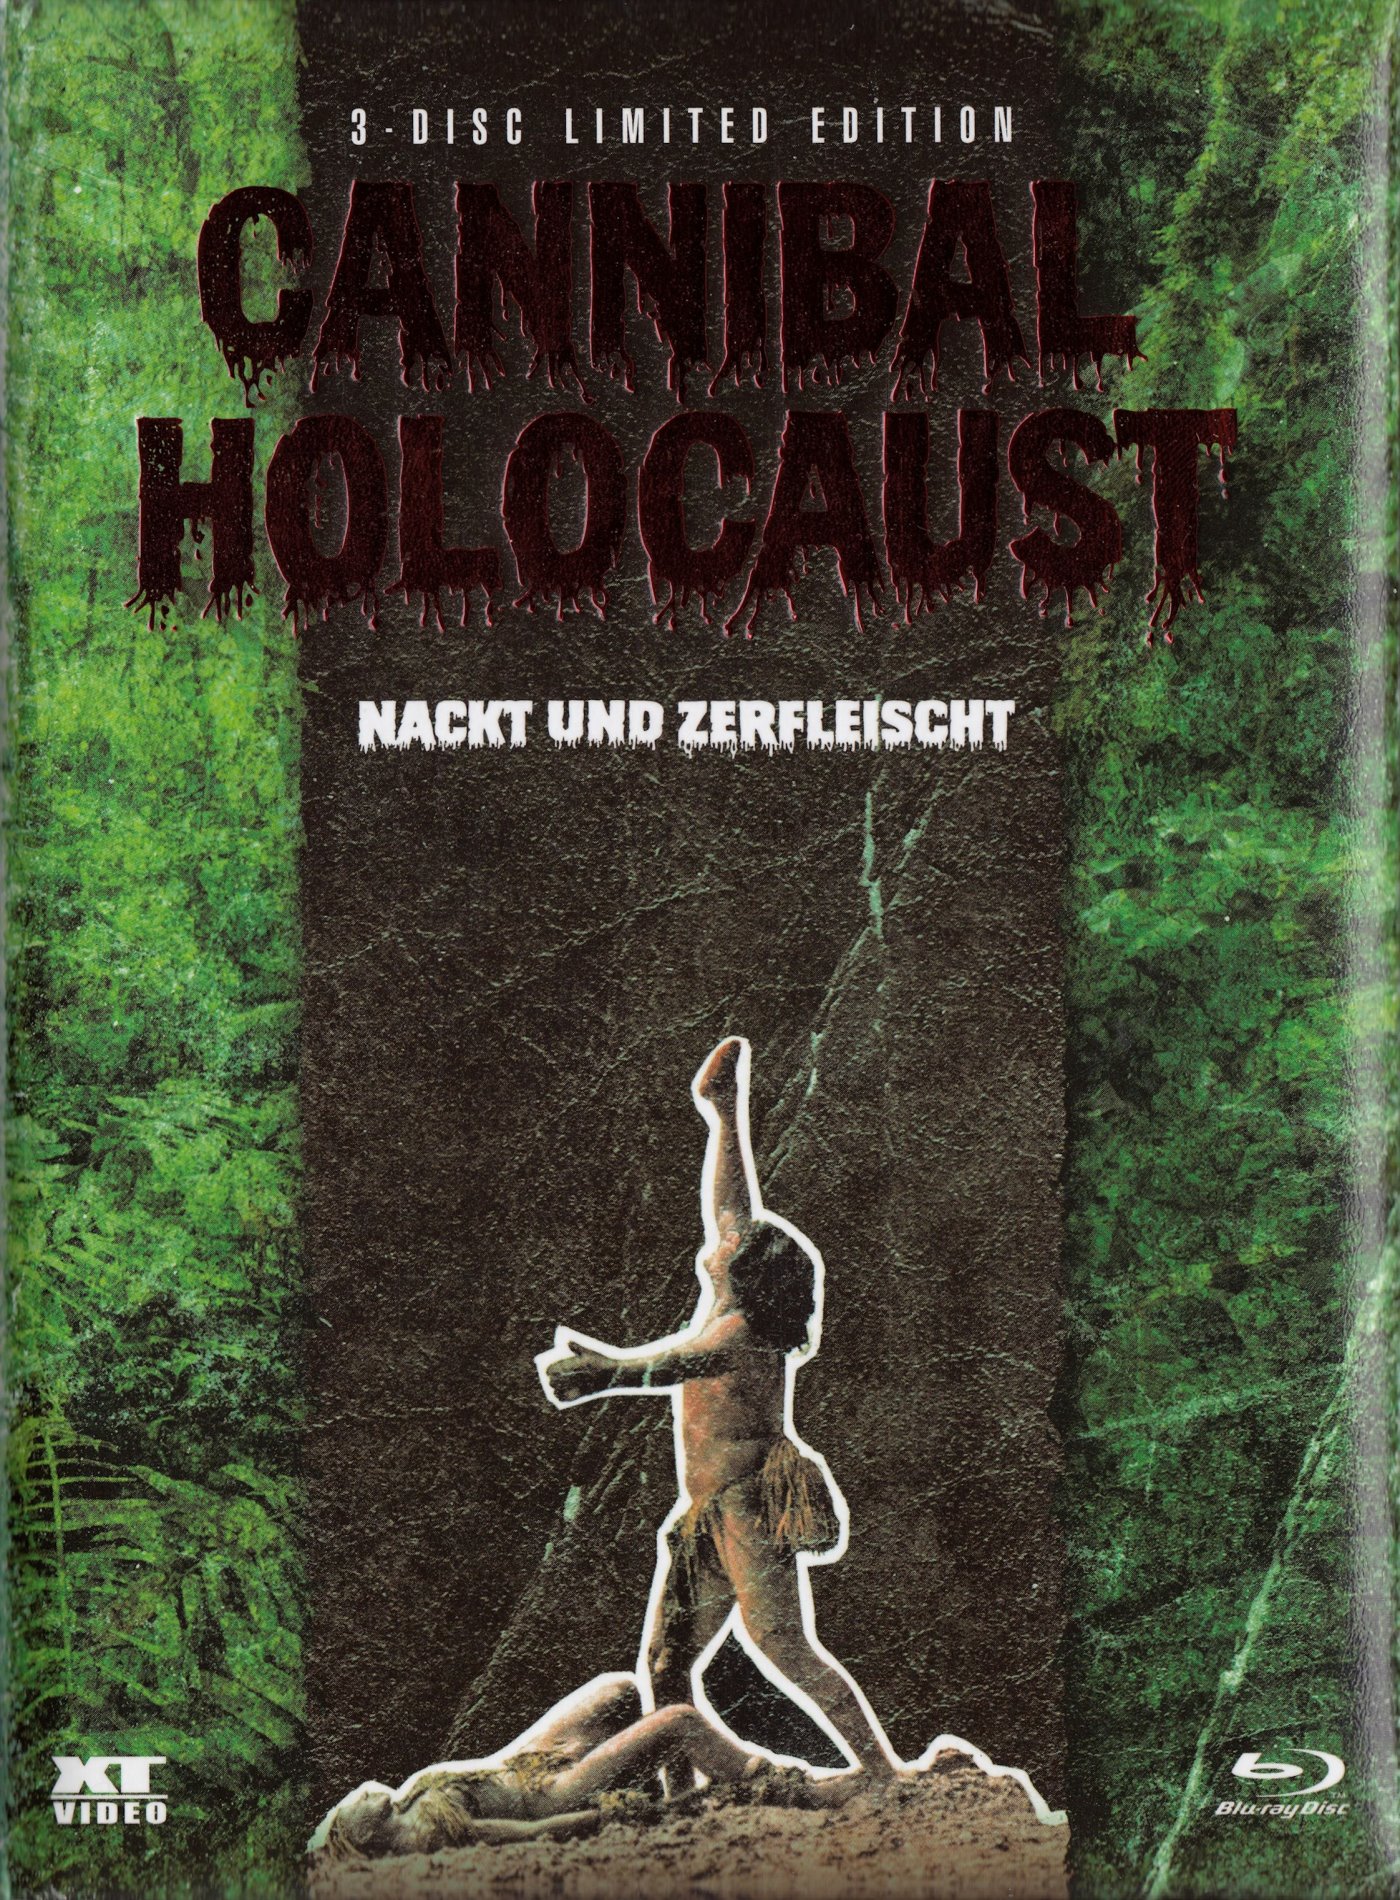 Cover - Cannibal Holocaust - Nackt und zerfleischt.jpg